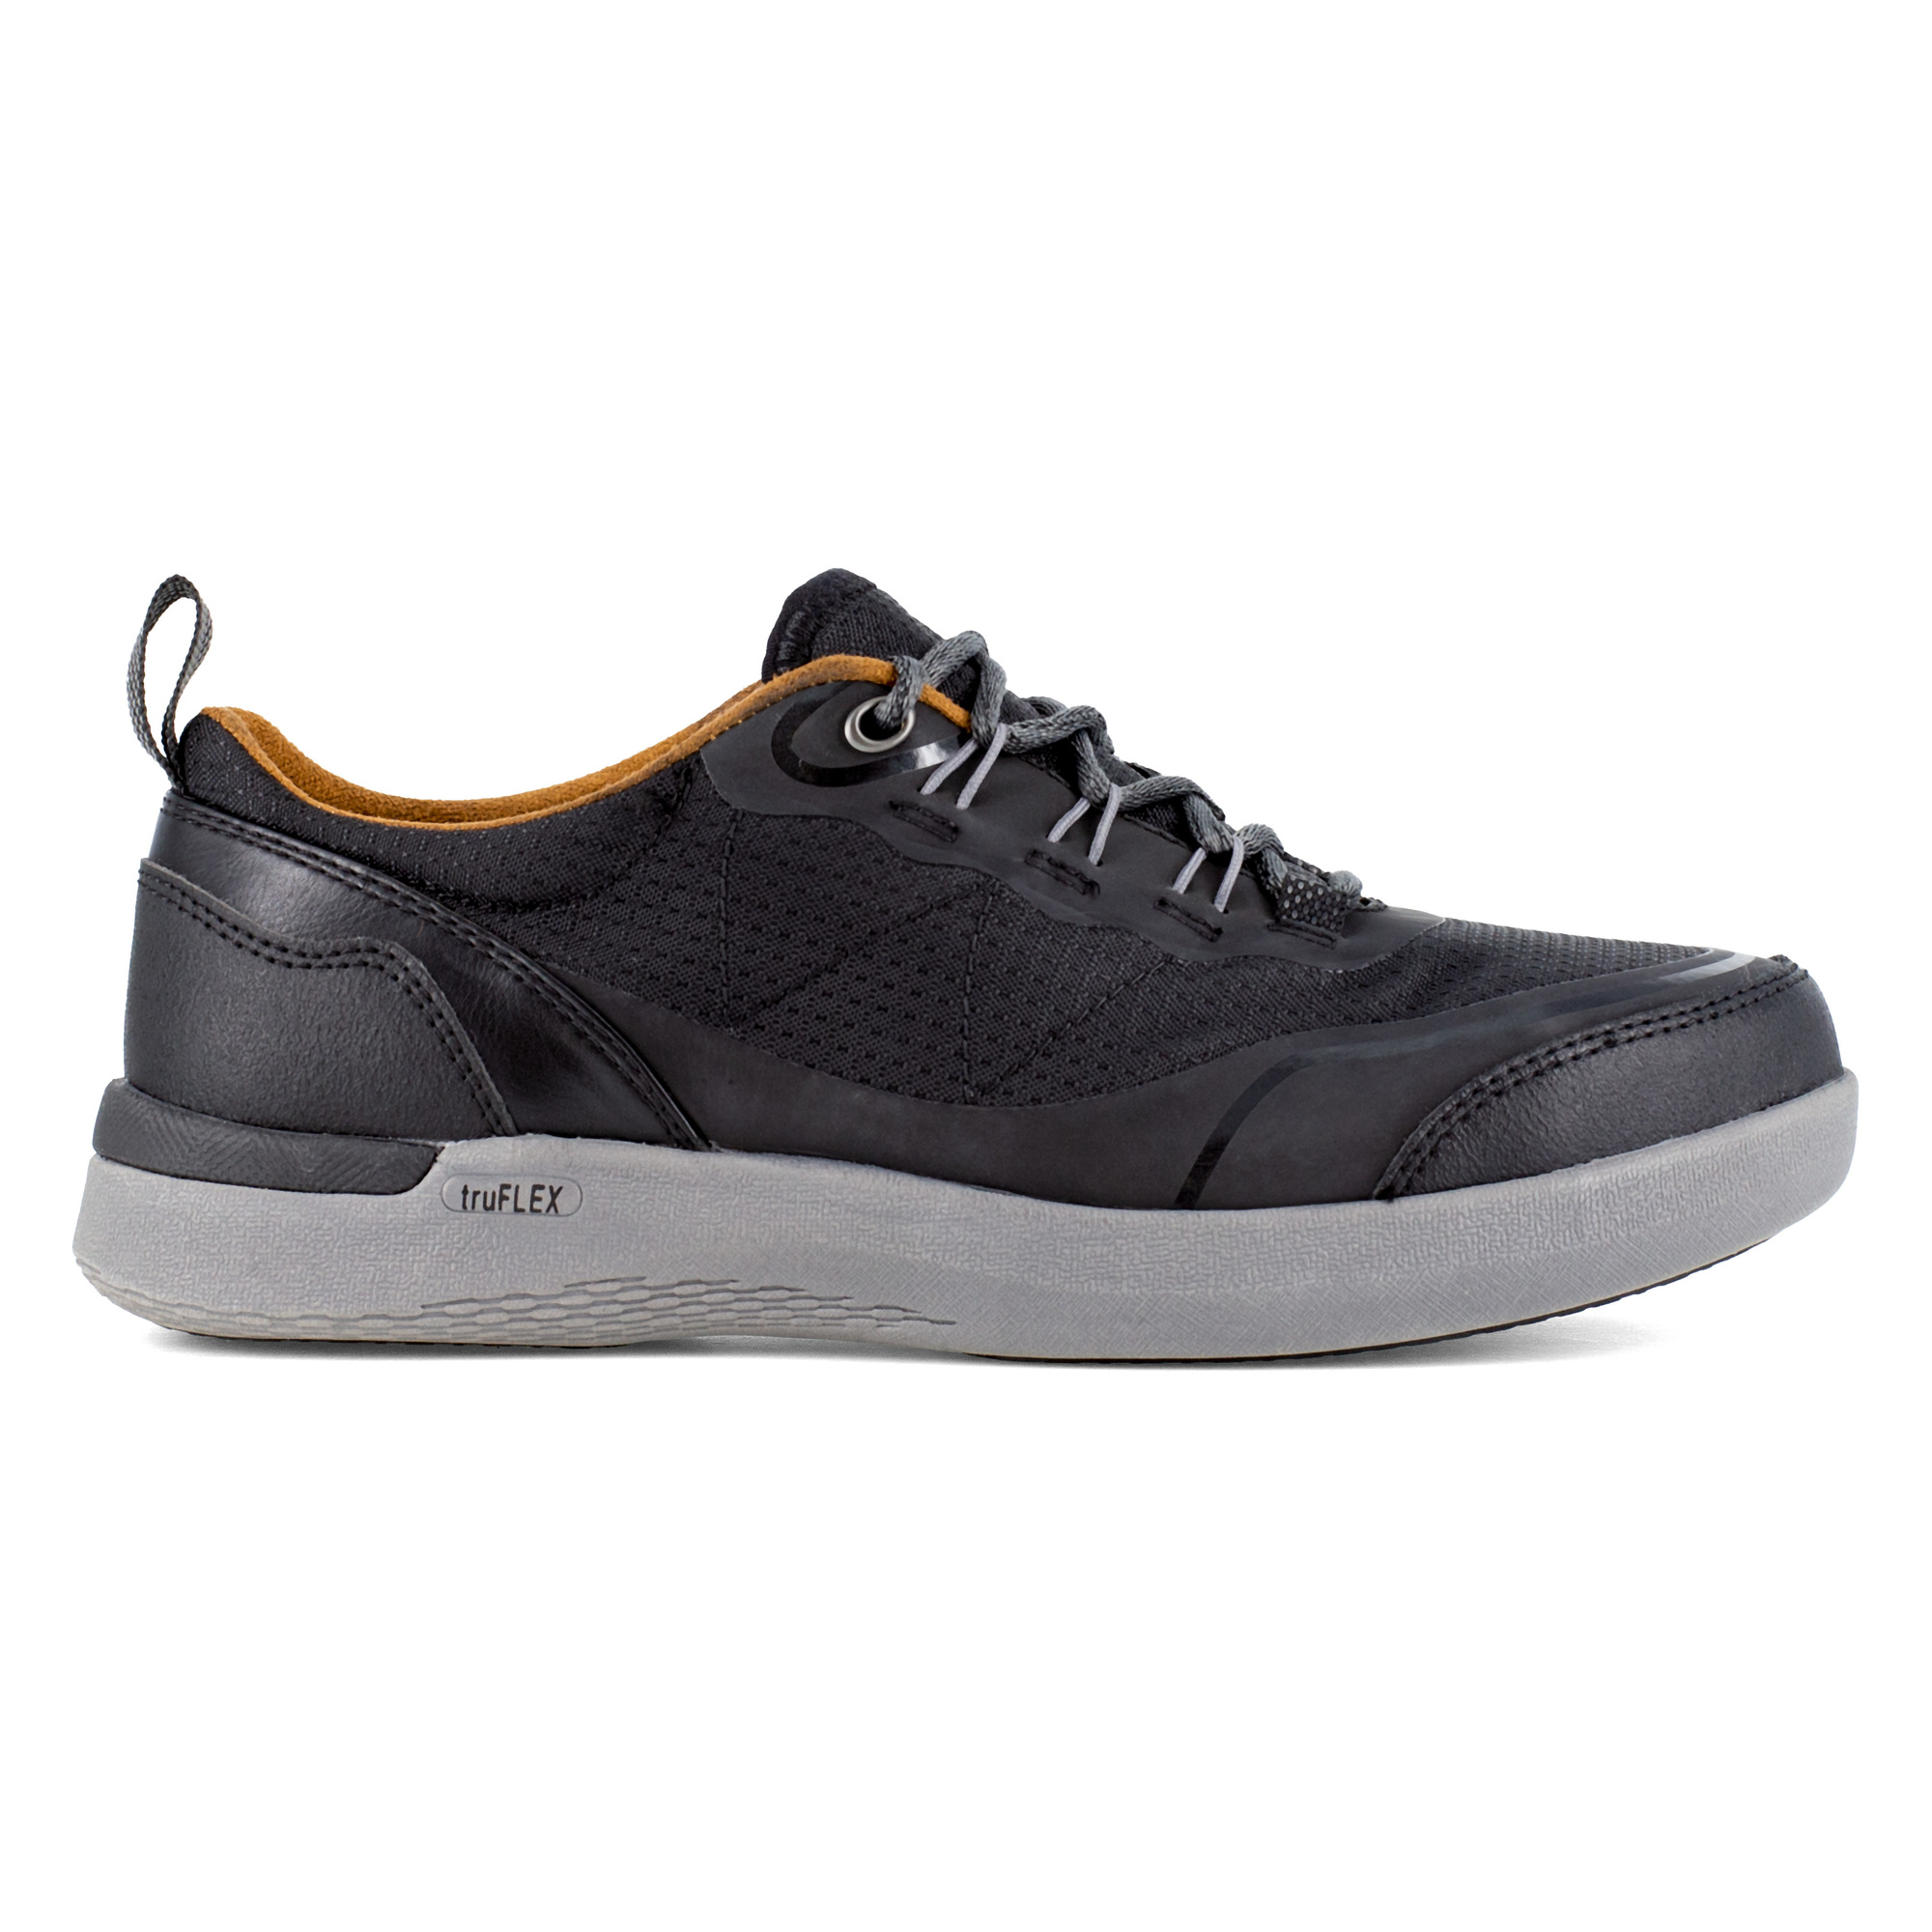 Rockport Works, Work Sneaker, Size 9 1/2, Width Medium, Color Black, Model RK687